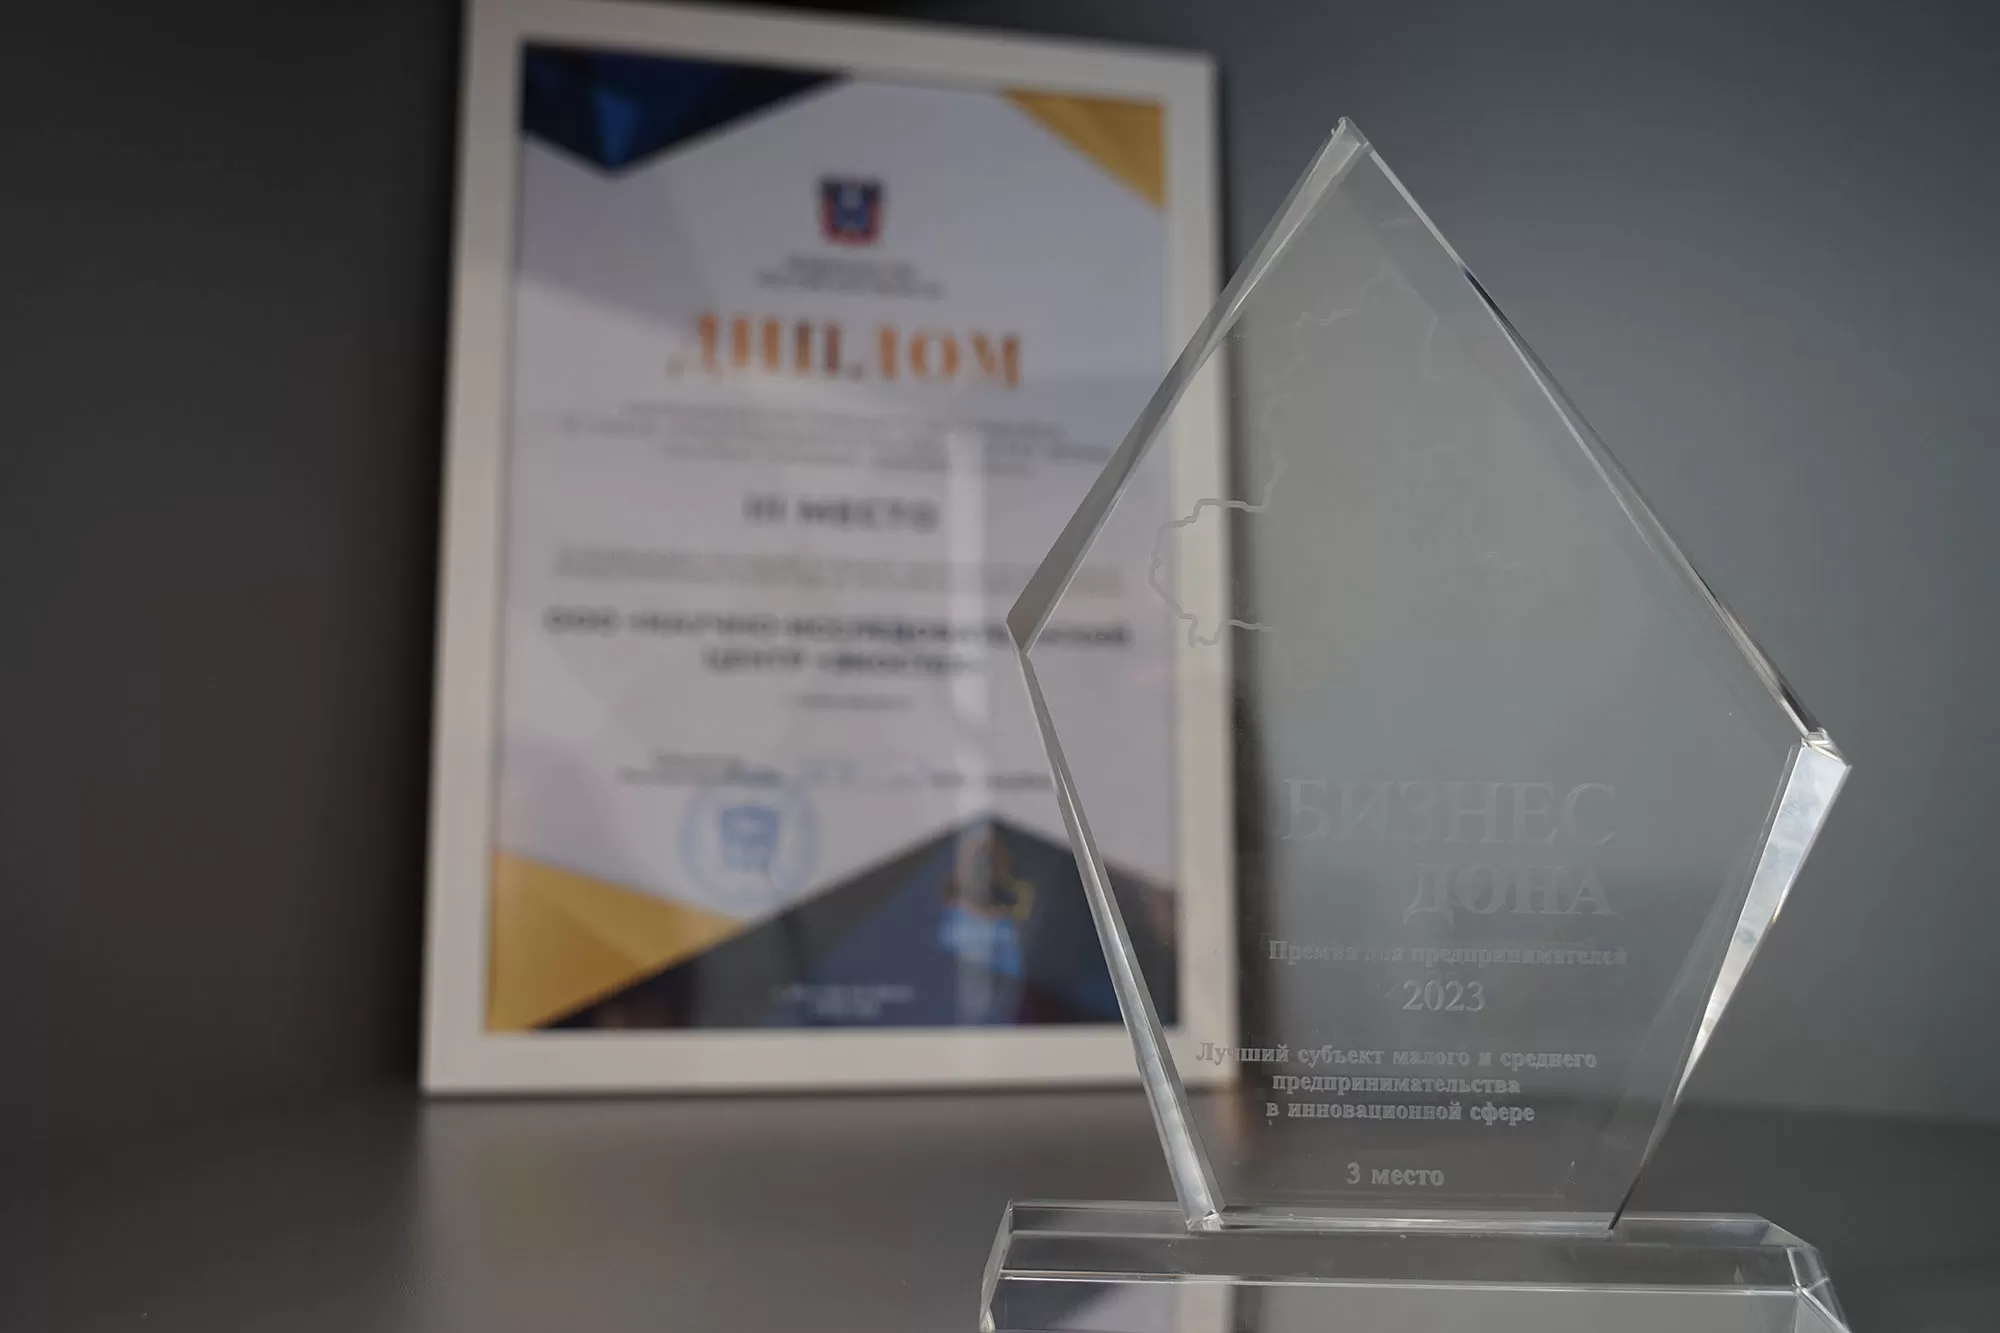 НИЦ ЭКОСТЕХ занял призовое место в номинации "Лучший субъект малого и среднего предпринимательства в инновационной сфере" — ЭКОС Групп